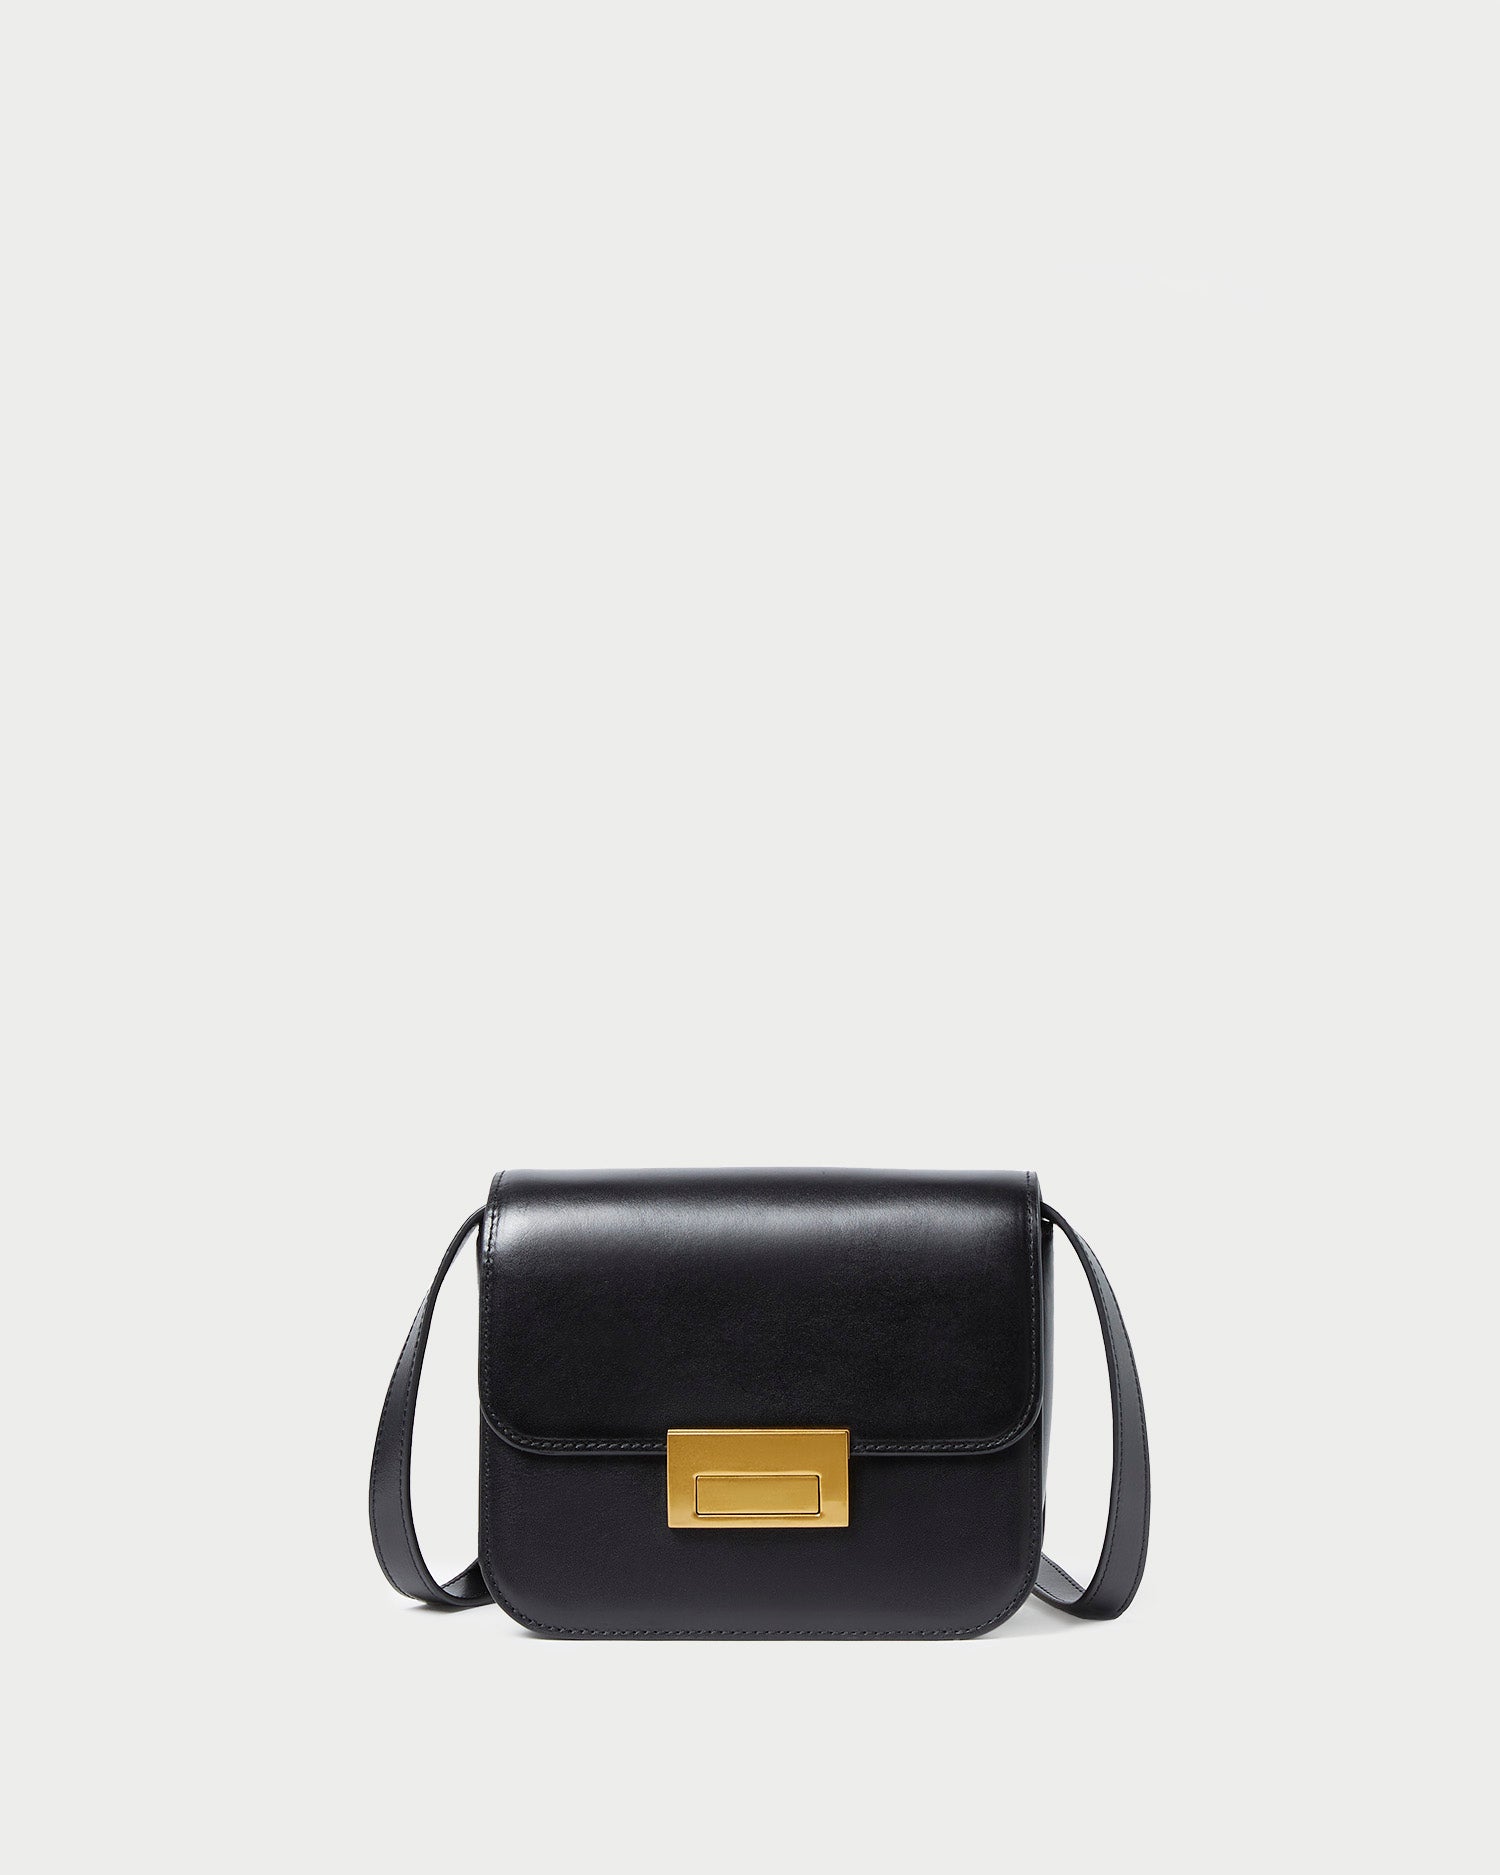 Ambra Mini, Italian Leather Bag